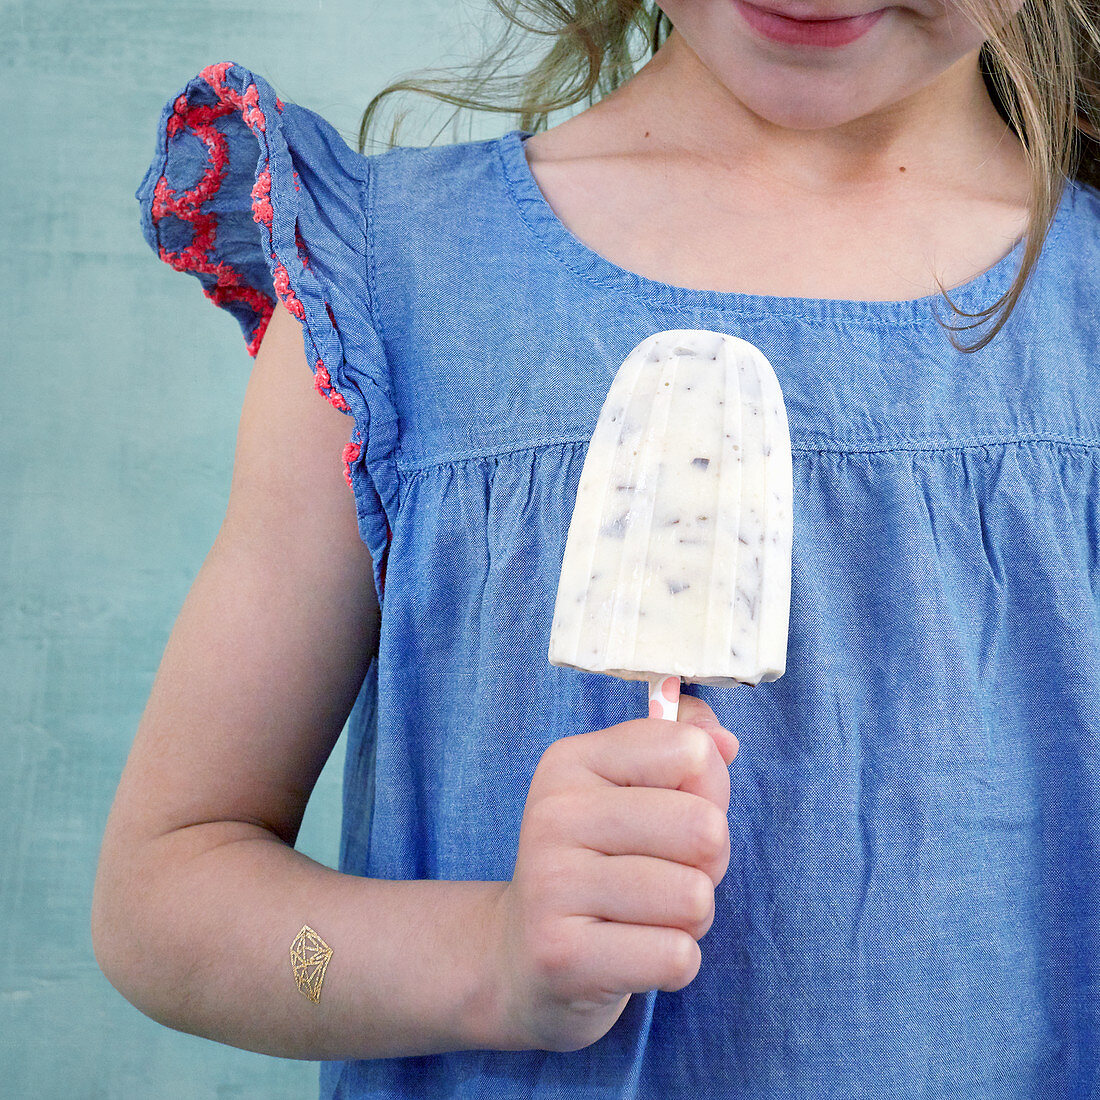 Kleines Mädchen hält Bananen-Stracciatella-Eis